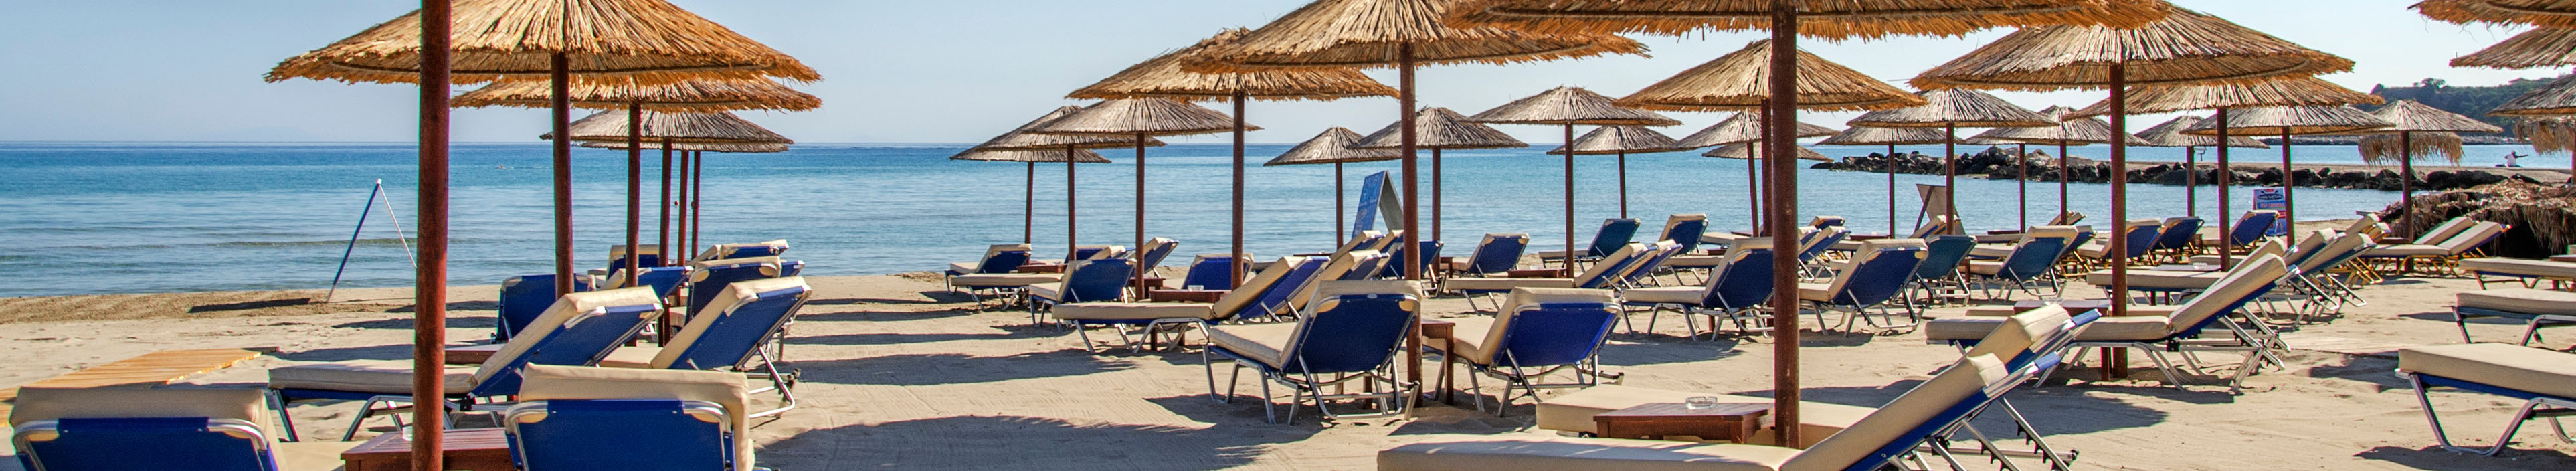 Griechenland, Strand mit Sonnenschirmen und Liegen